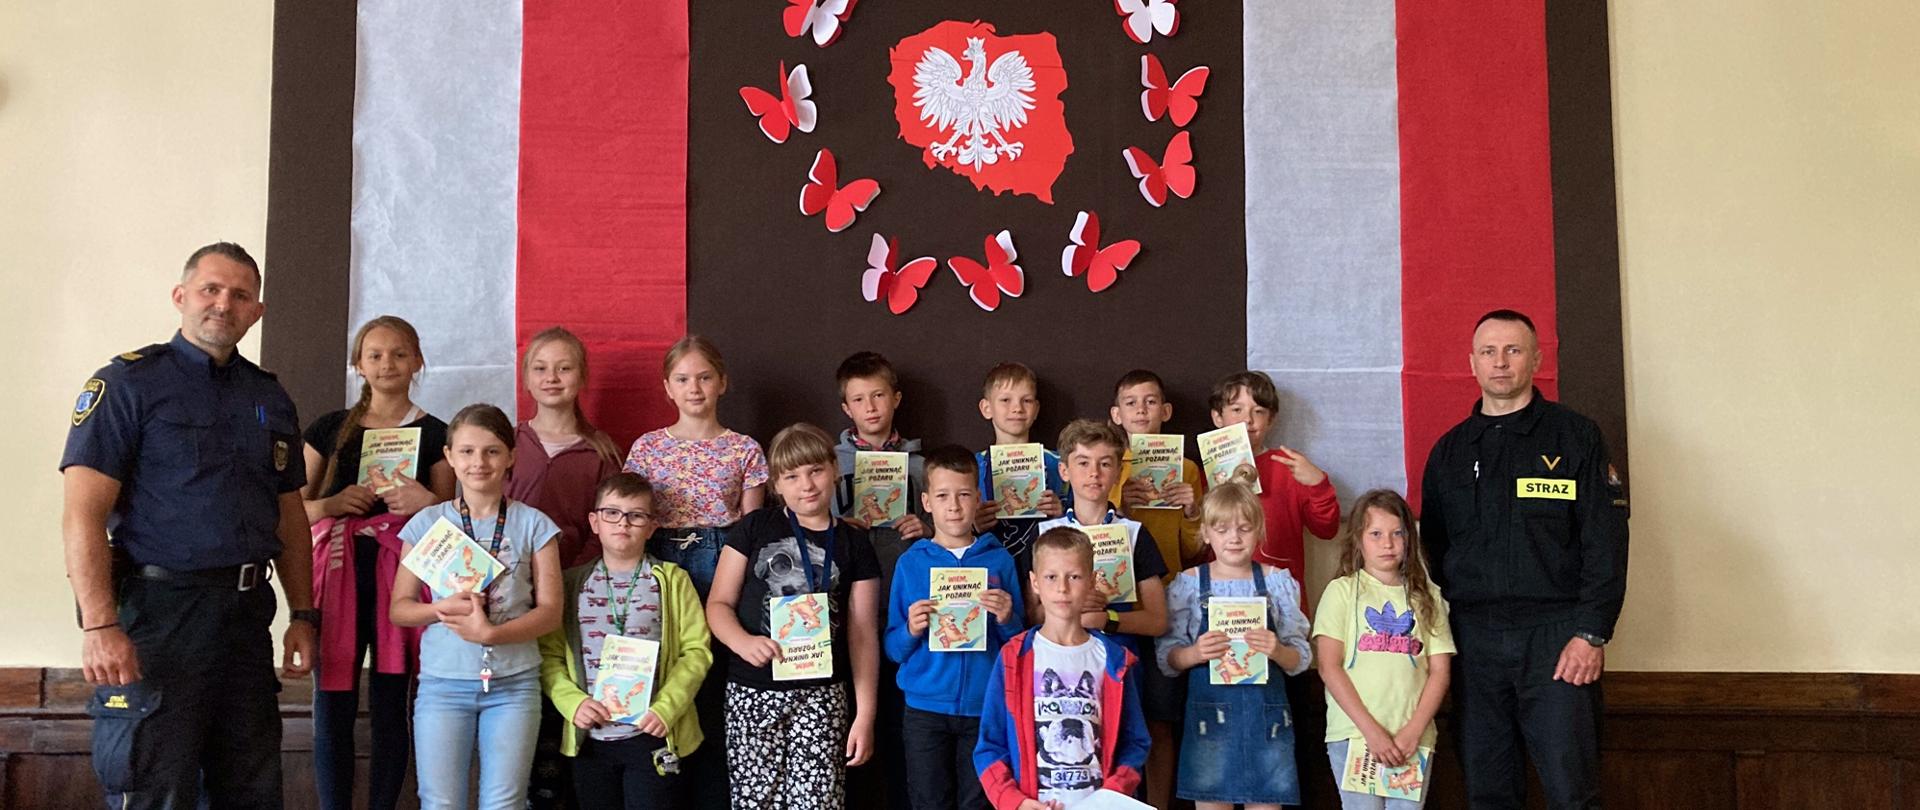 Zdjęcie przedstawia mundurowych: strażaka i strażnika miejskiego w otoczeniu dzieci na tle ścianki z grafiką obrys obszaru polski koloru czerwonego i w środku biały orzeł. Dzieci trzymają w ręku broszurki edukacyjne.